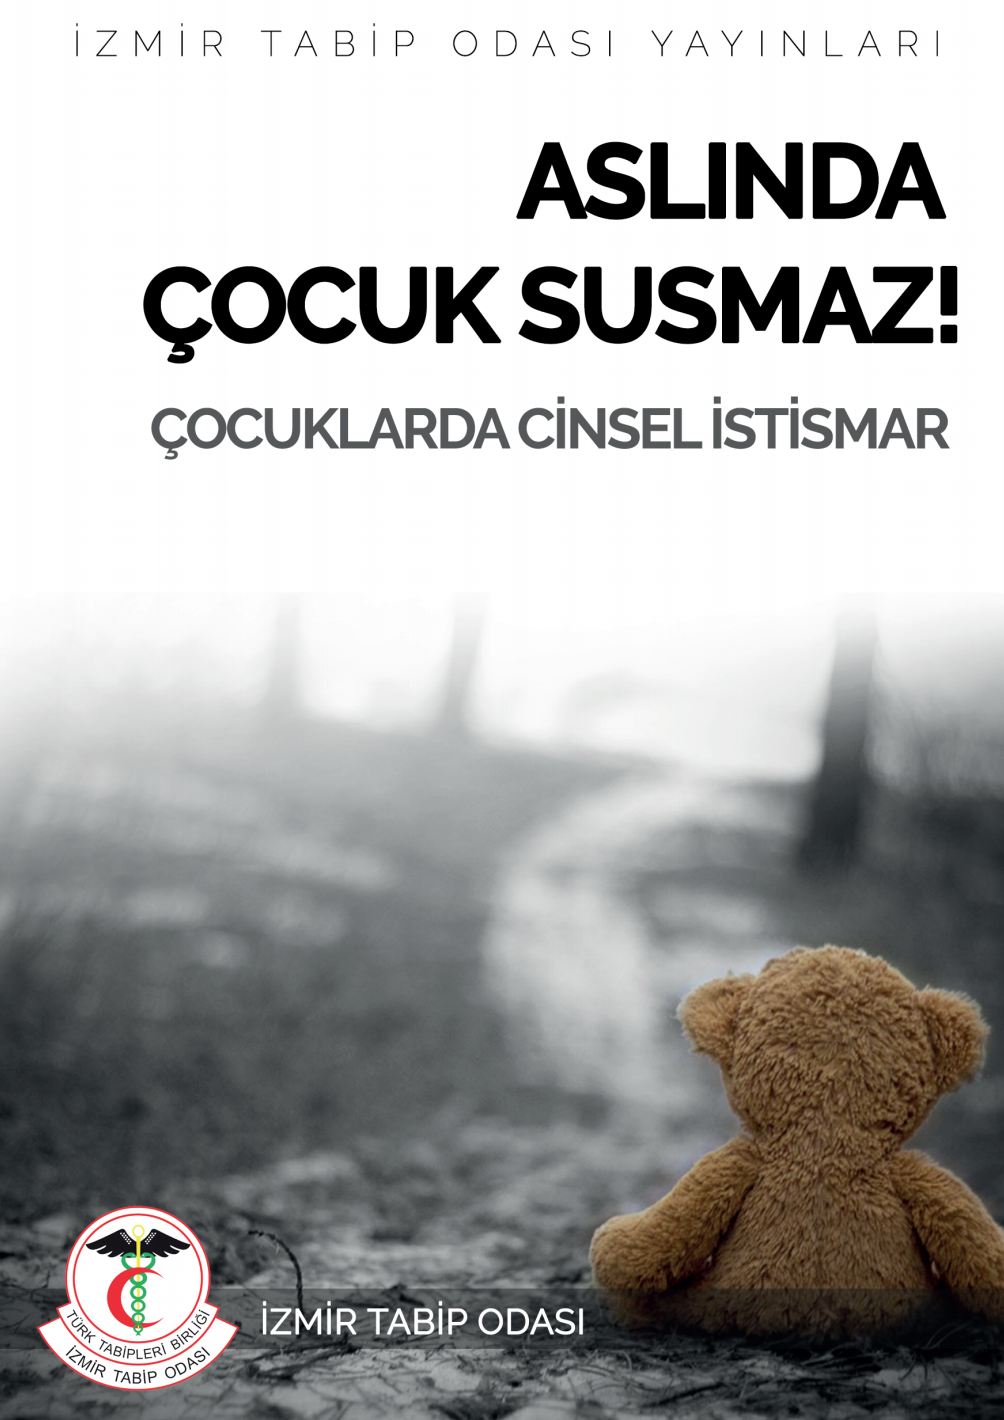 İzmir Tabip Odası Cinsel İstismar Bilgilendirme Broşürü "Aslında Çocuk Susmaz" yayınlandı